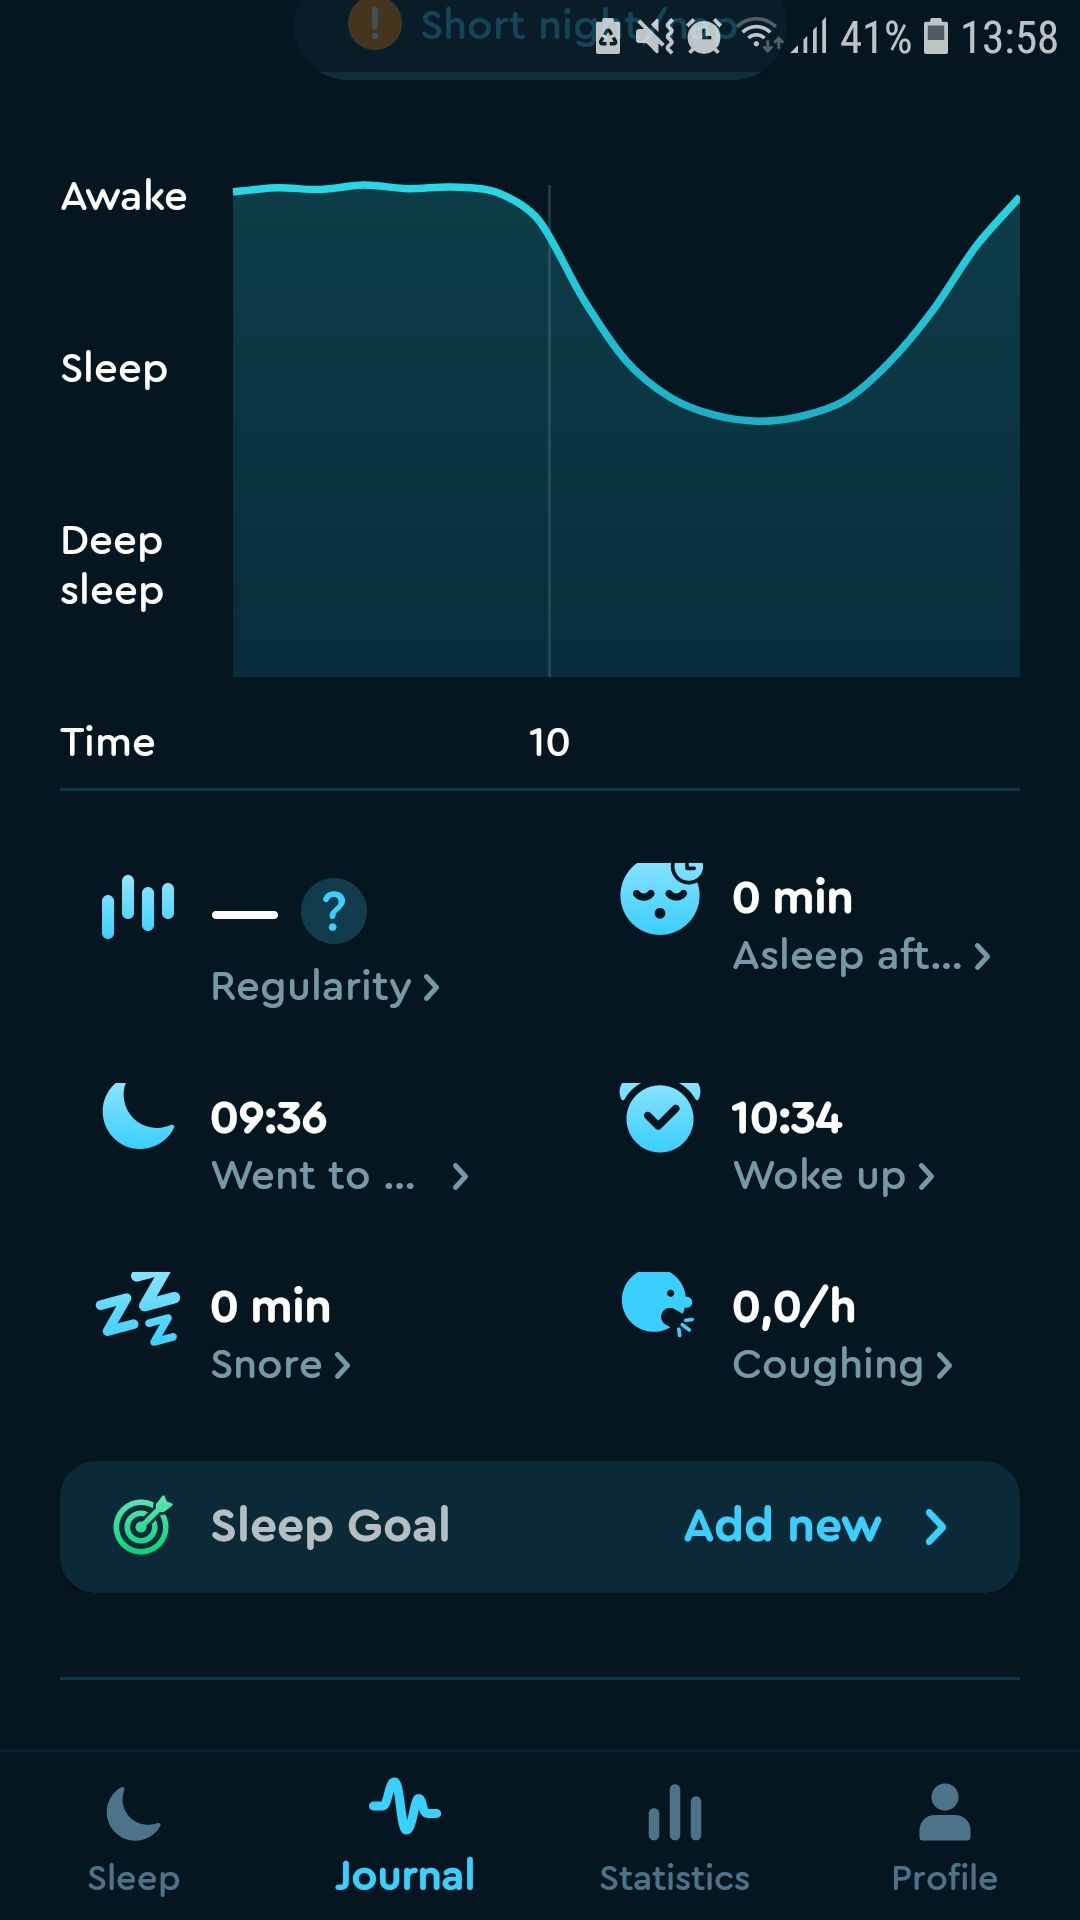 Sleep Cycle journal sleep tracking mobile app